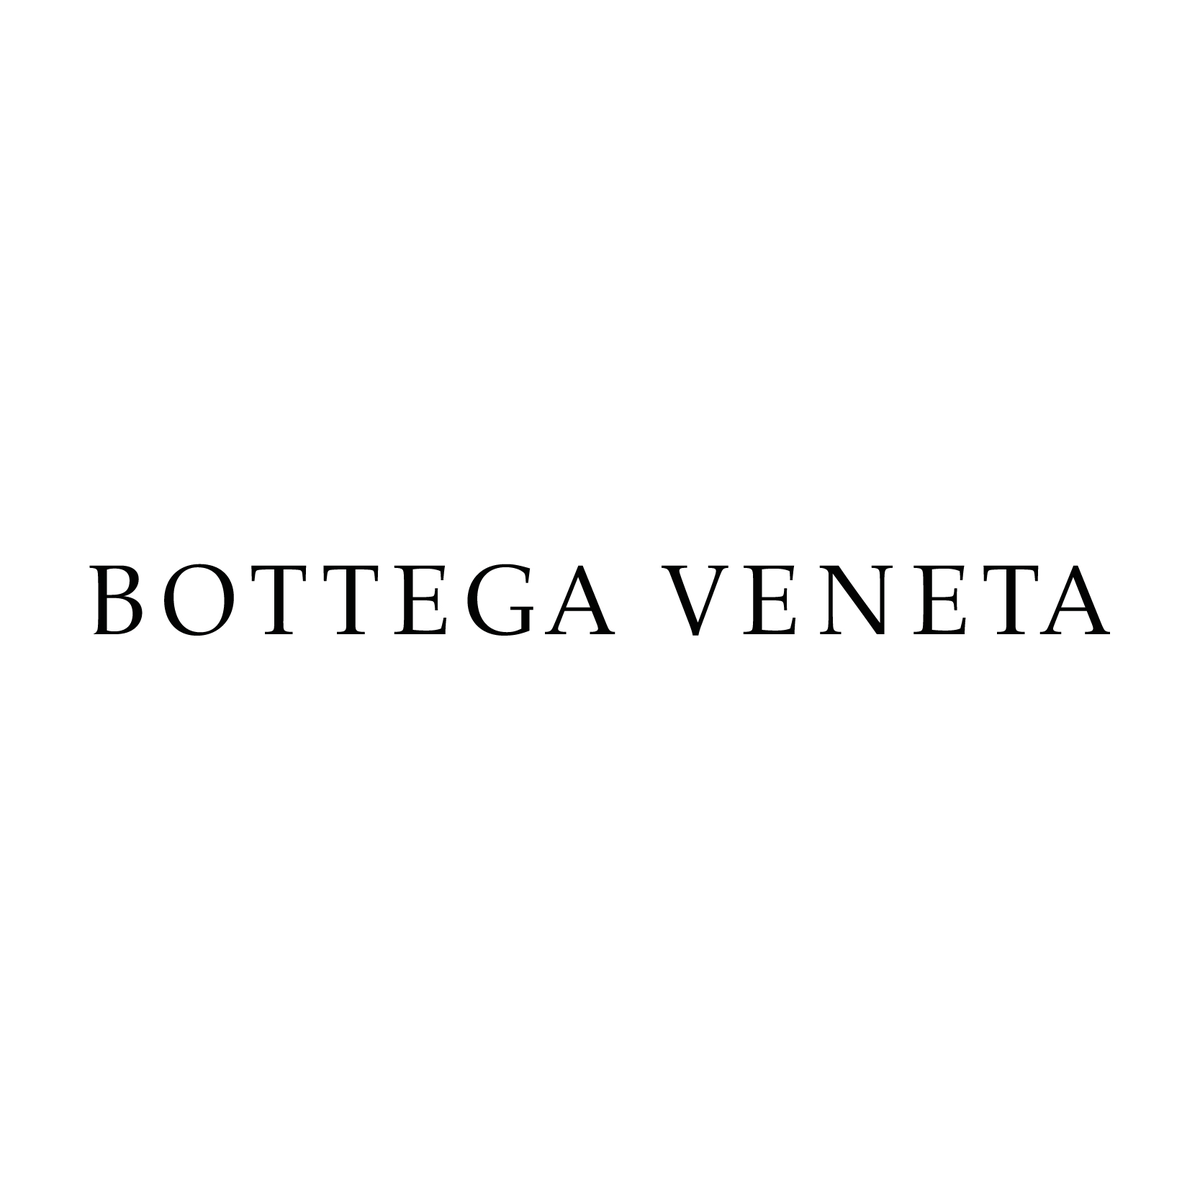 Bottega Veneta - Wikipedia